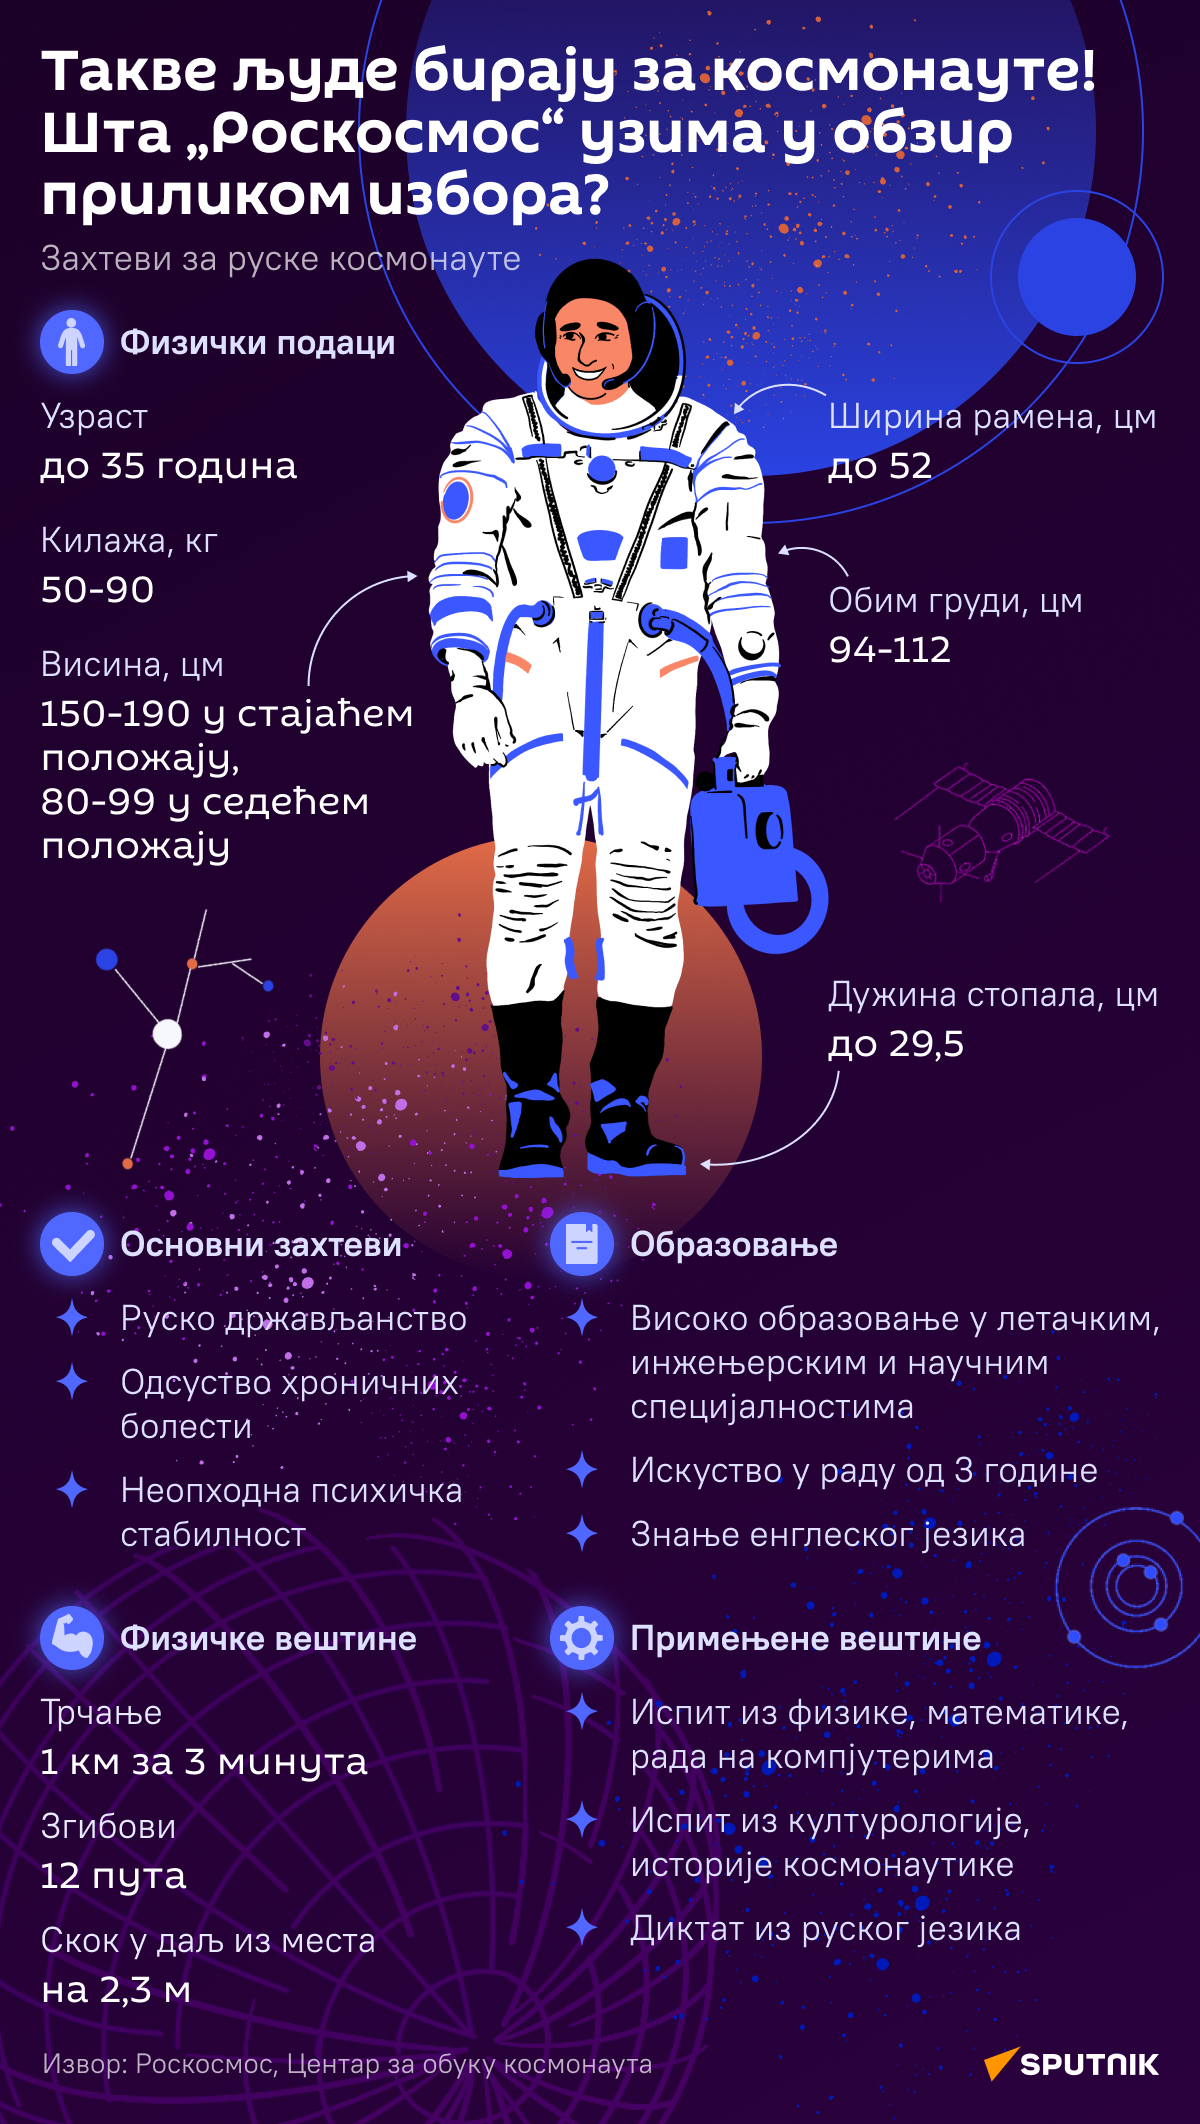 Инфографика Такве људе бирају за космонауте  ЋИР деск - Sputnik Србија